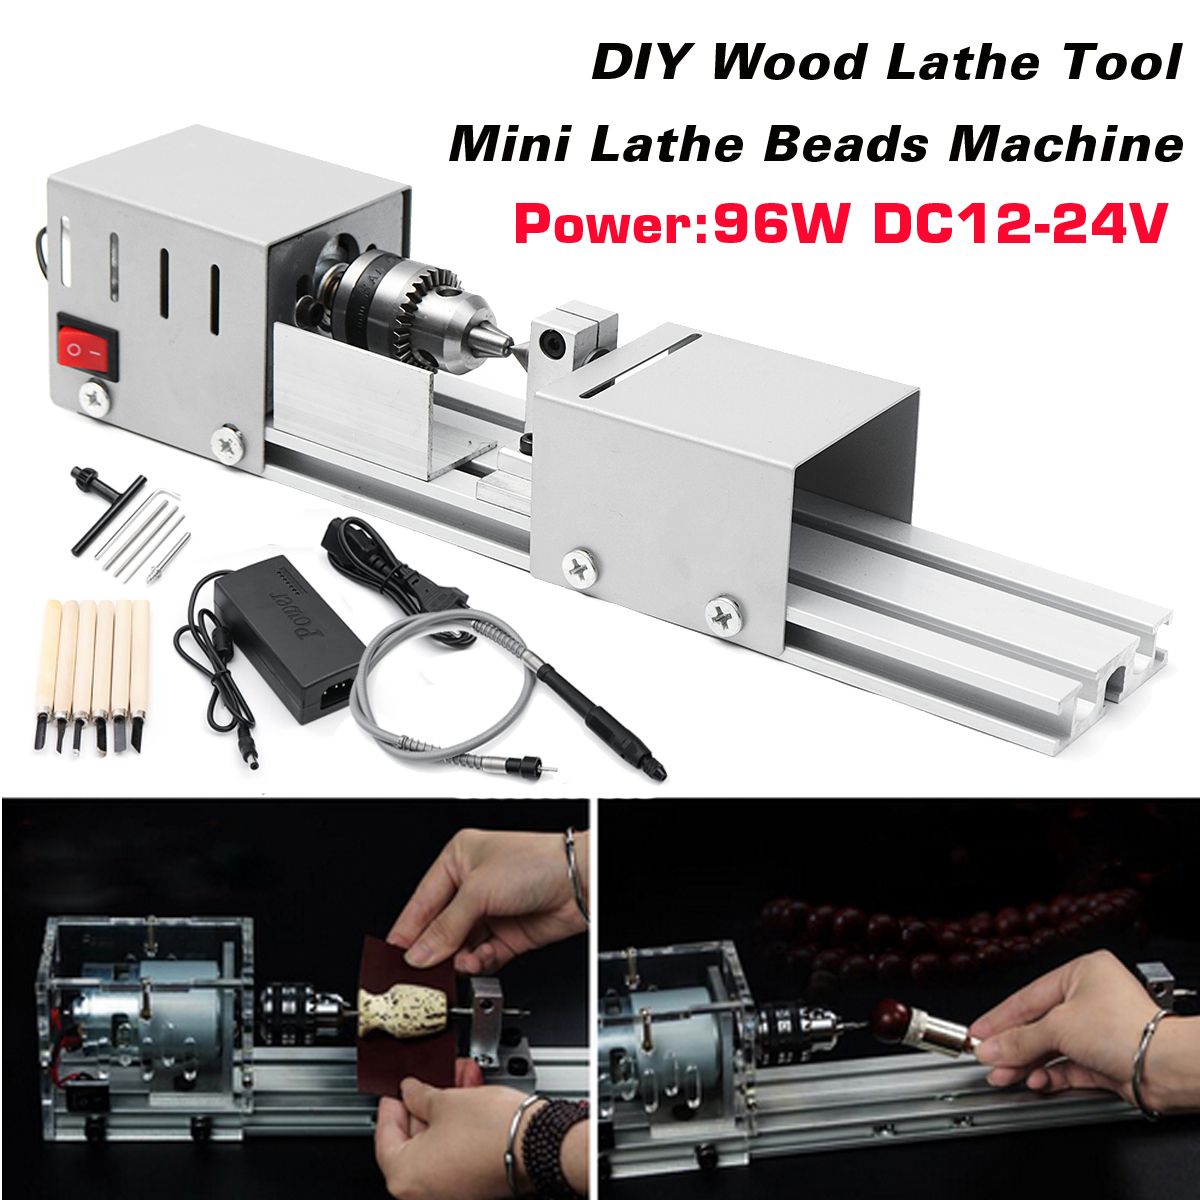 Mini-Lathe-Beads-Machine-Woodworking-DIY-Lathe-Polishing-Cutting-Drill-Wood-Lathe-Machine-1382349